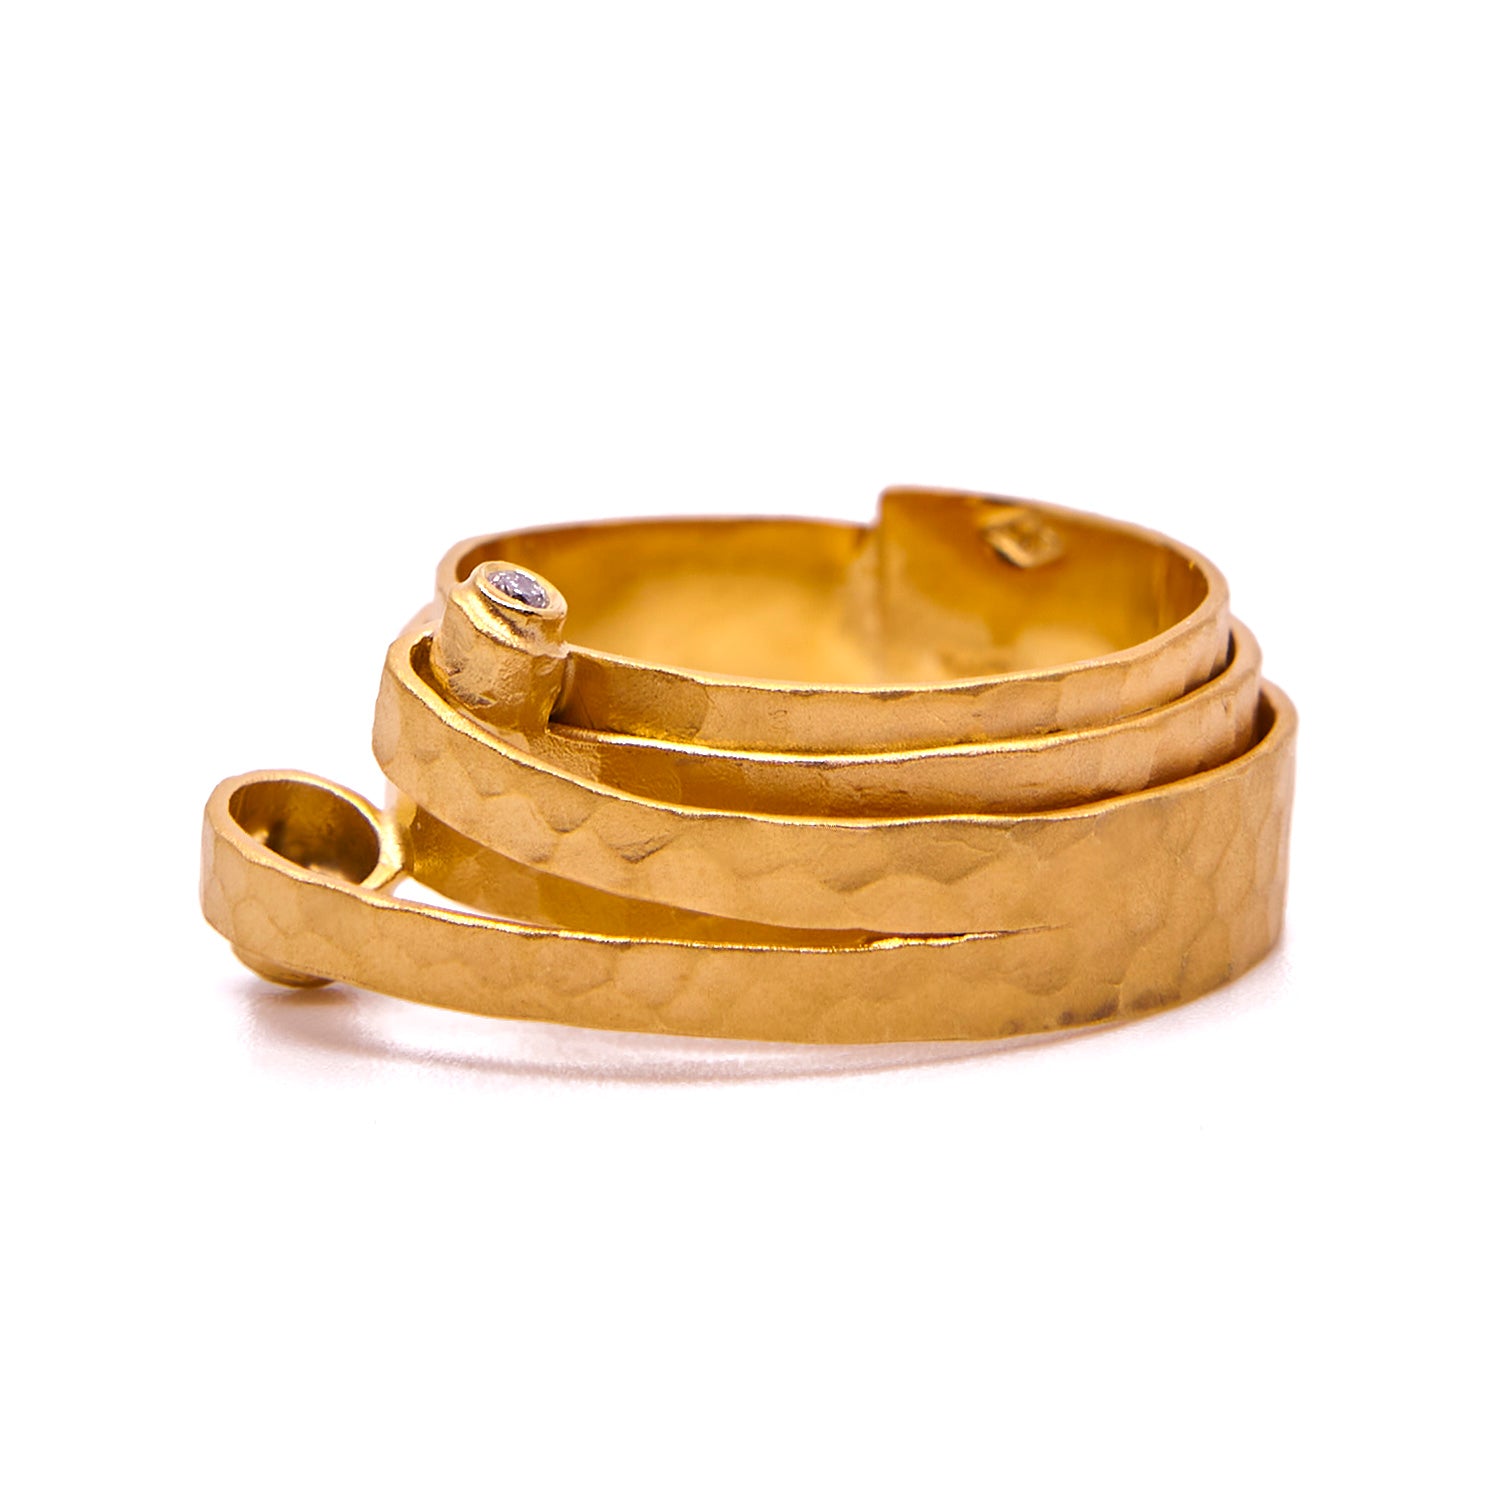 Gehämmerter Ring aus Gelbgold mit Locke